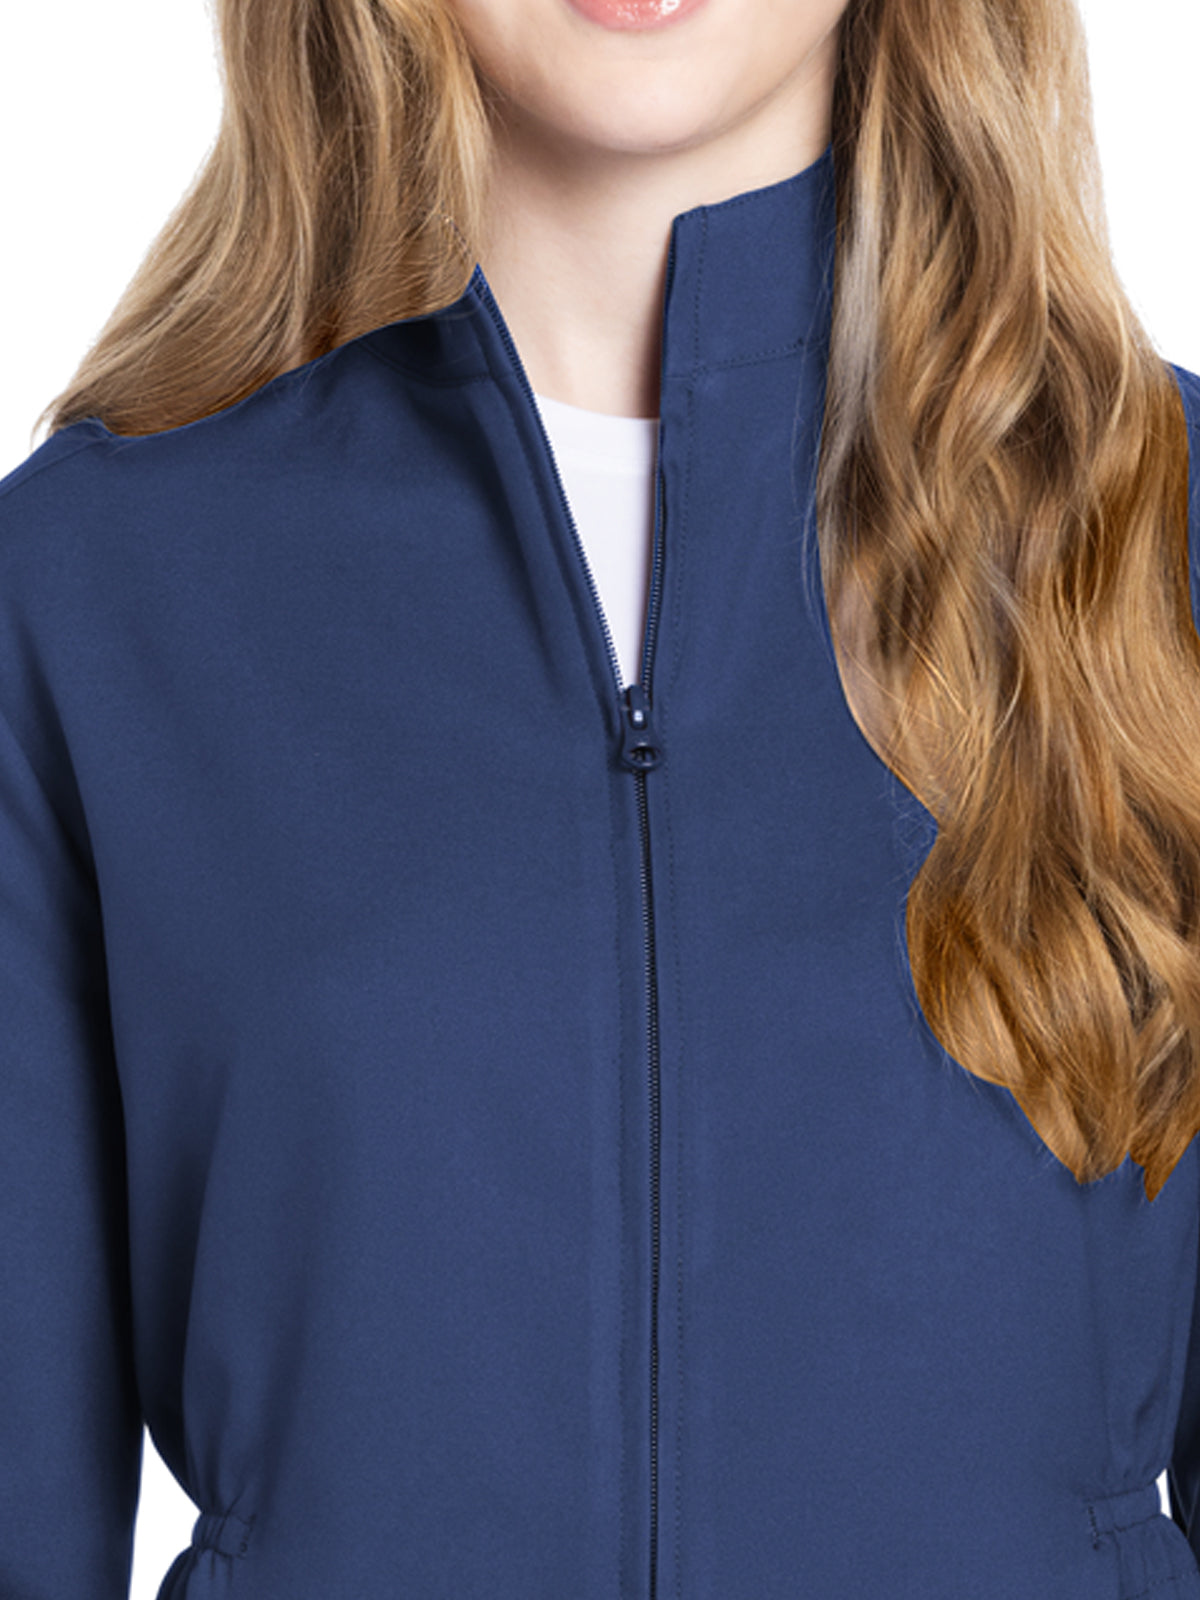 Women's 2-Pocket Zip Front Jacket - CK391A - Navy